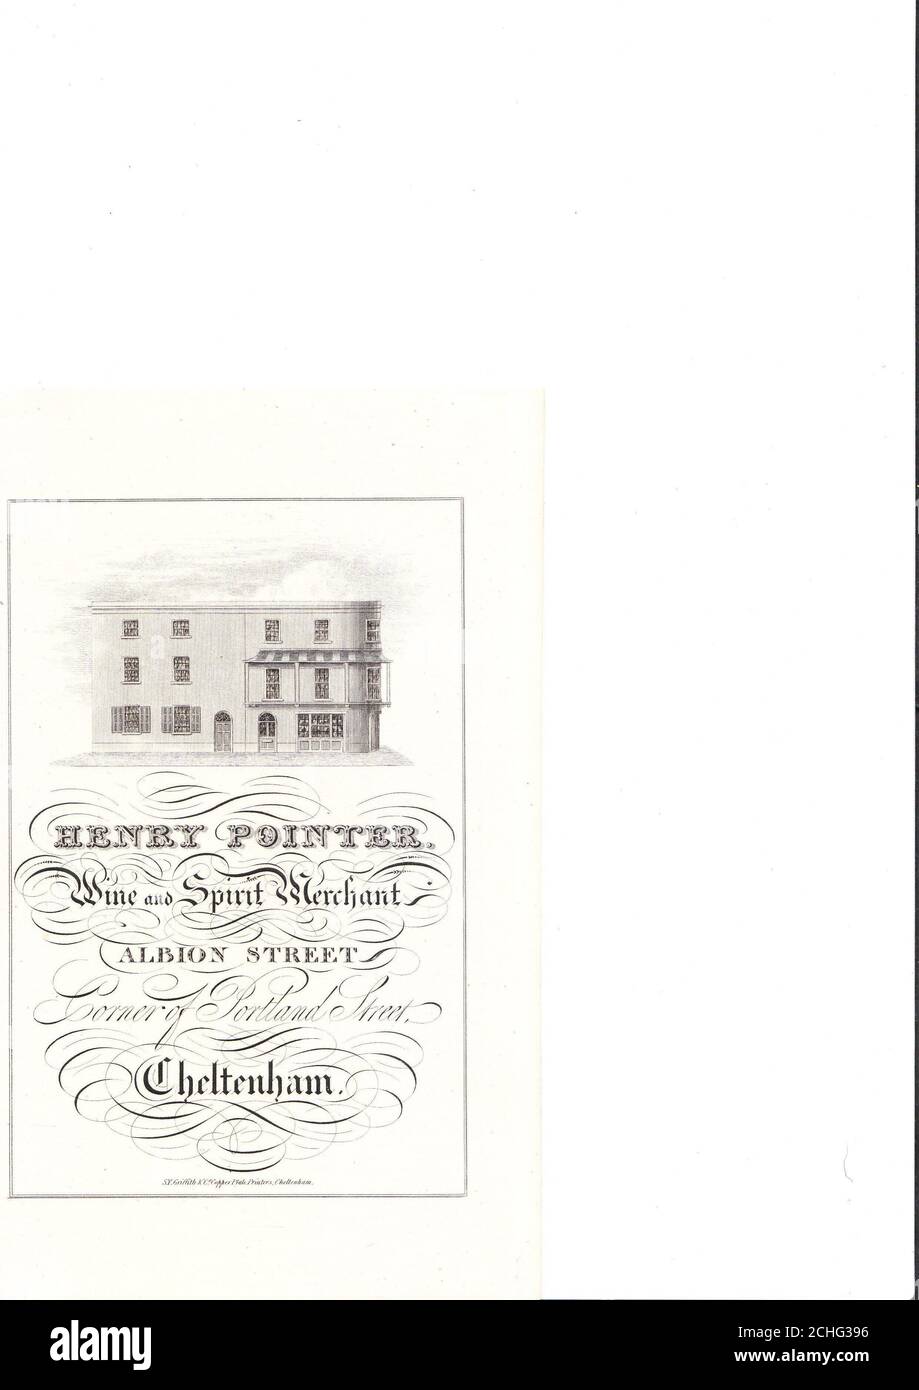 Publicité commerciale du XIXe siècle c1826 pour Henry pointer, Wine & Spirit Merchant, Cheltenham, Royaume-Uni - avec Etching de ses locaux du début du XIXe siècle Banque D'Images